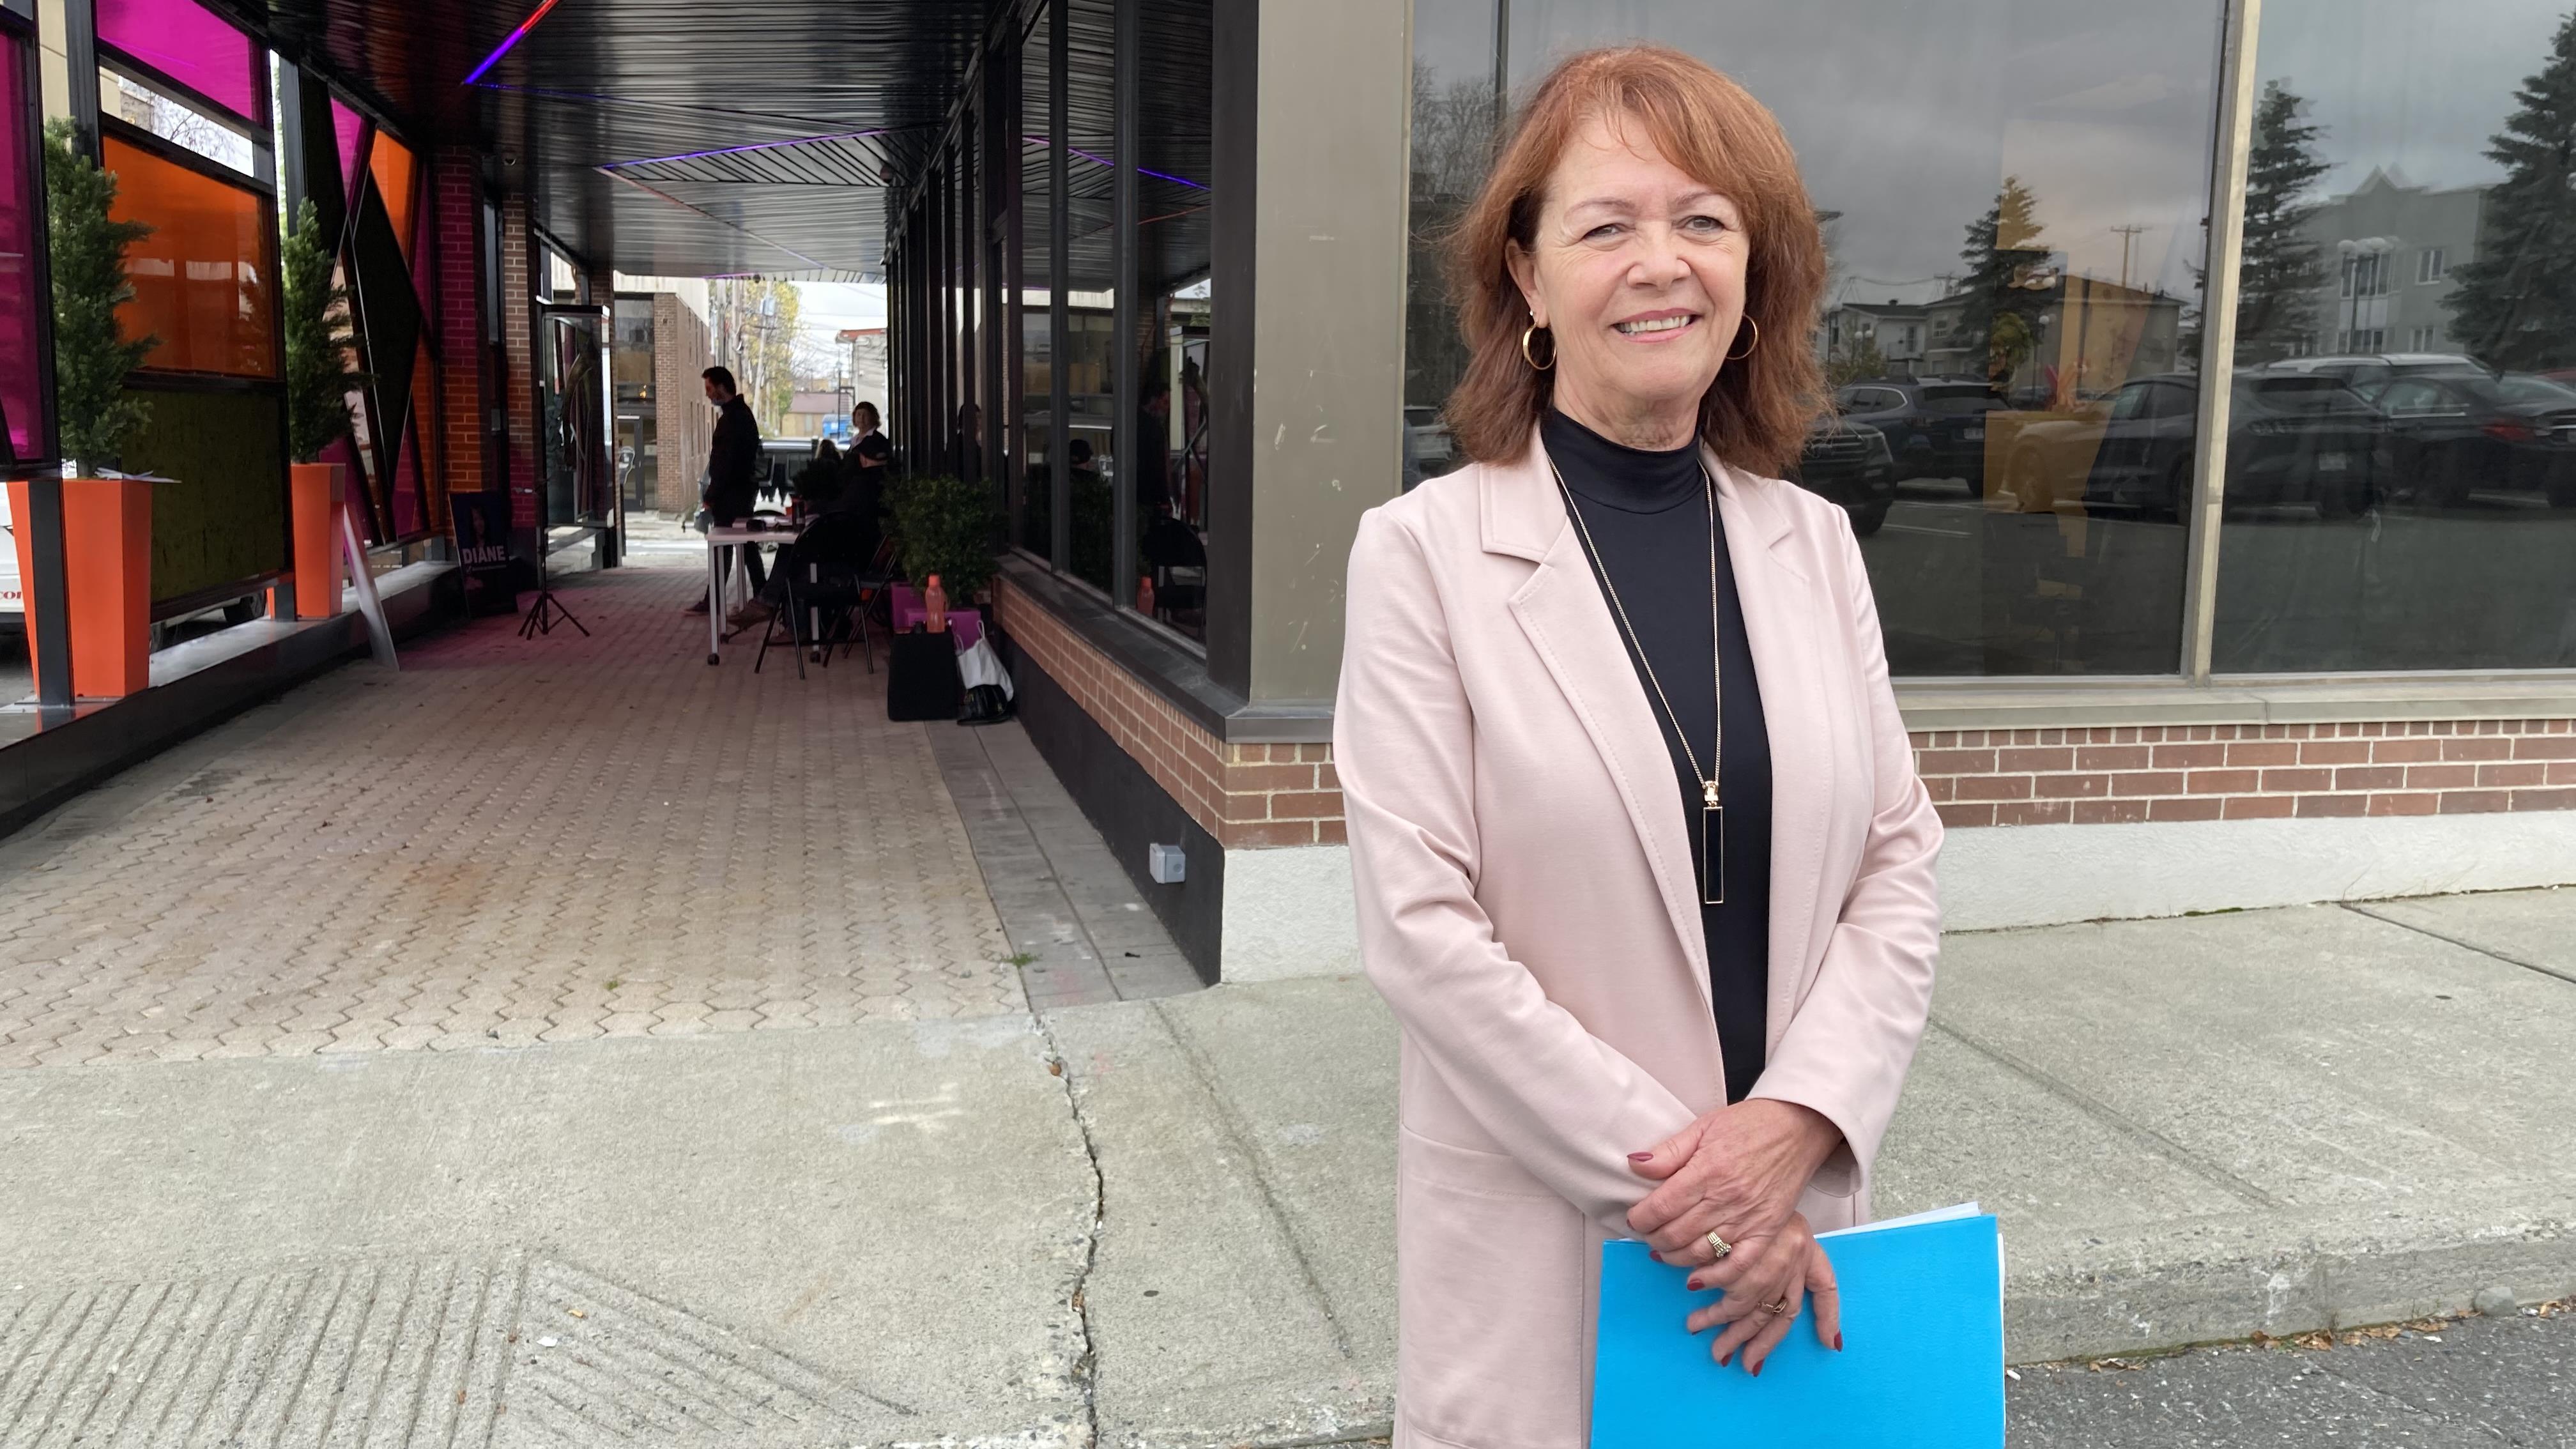 Élections municipales  :  la candidature de Diane Dallaire
Élections municipales  :  la candidature de Diane Dallaire